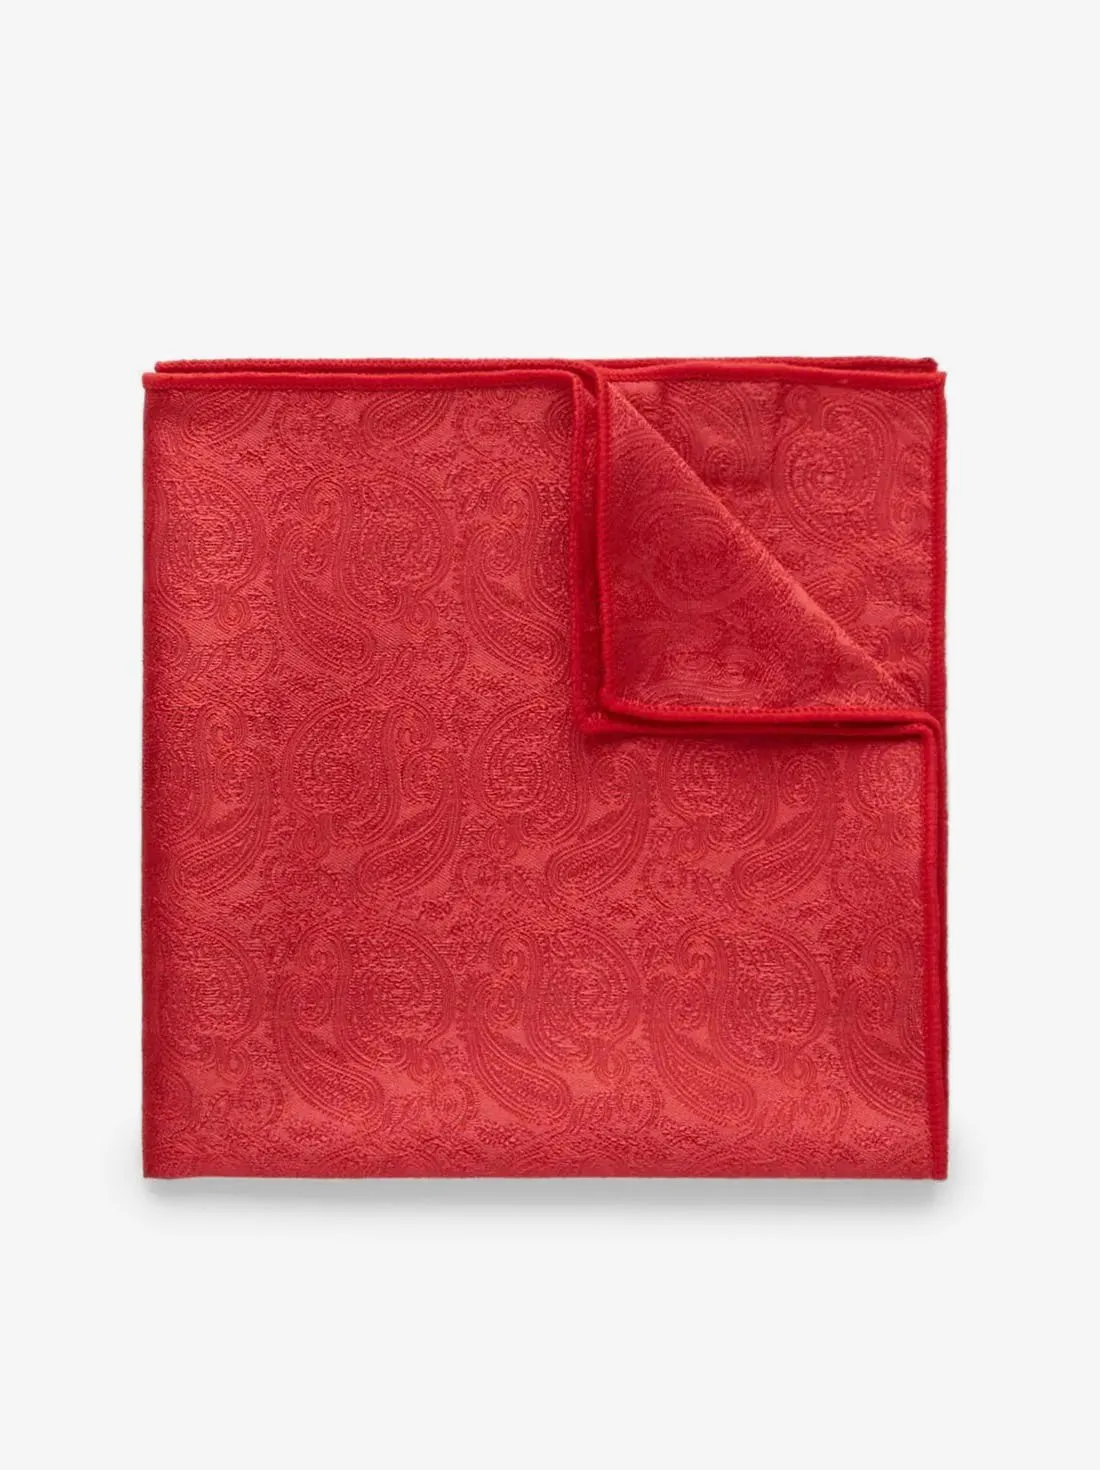 Red Pocket Square Formal